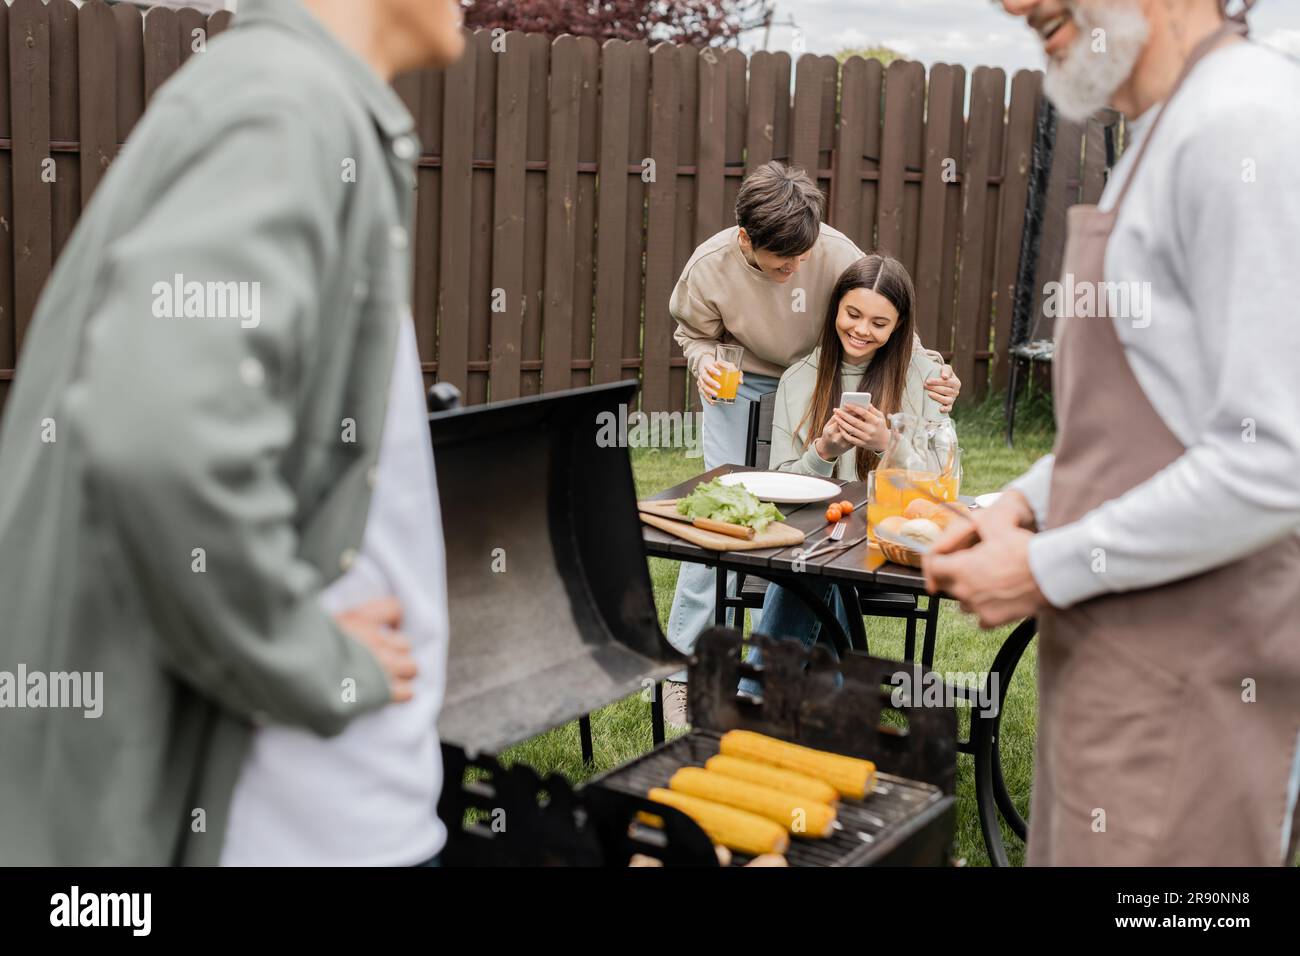 Ein fröhliches Teenager-Mädchen, das dem jungen erwachsenen Bruder, digitalen Zeitalter, dem Vater, der Essen auf dem grill zubereitet, einer Barbecue-Party, den Eltern, etwas auf dem Smartphone zeigt Stockfoto